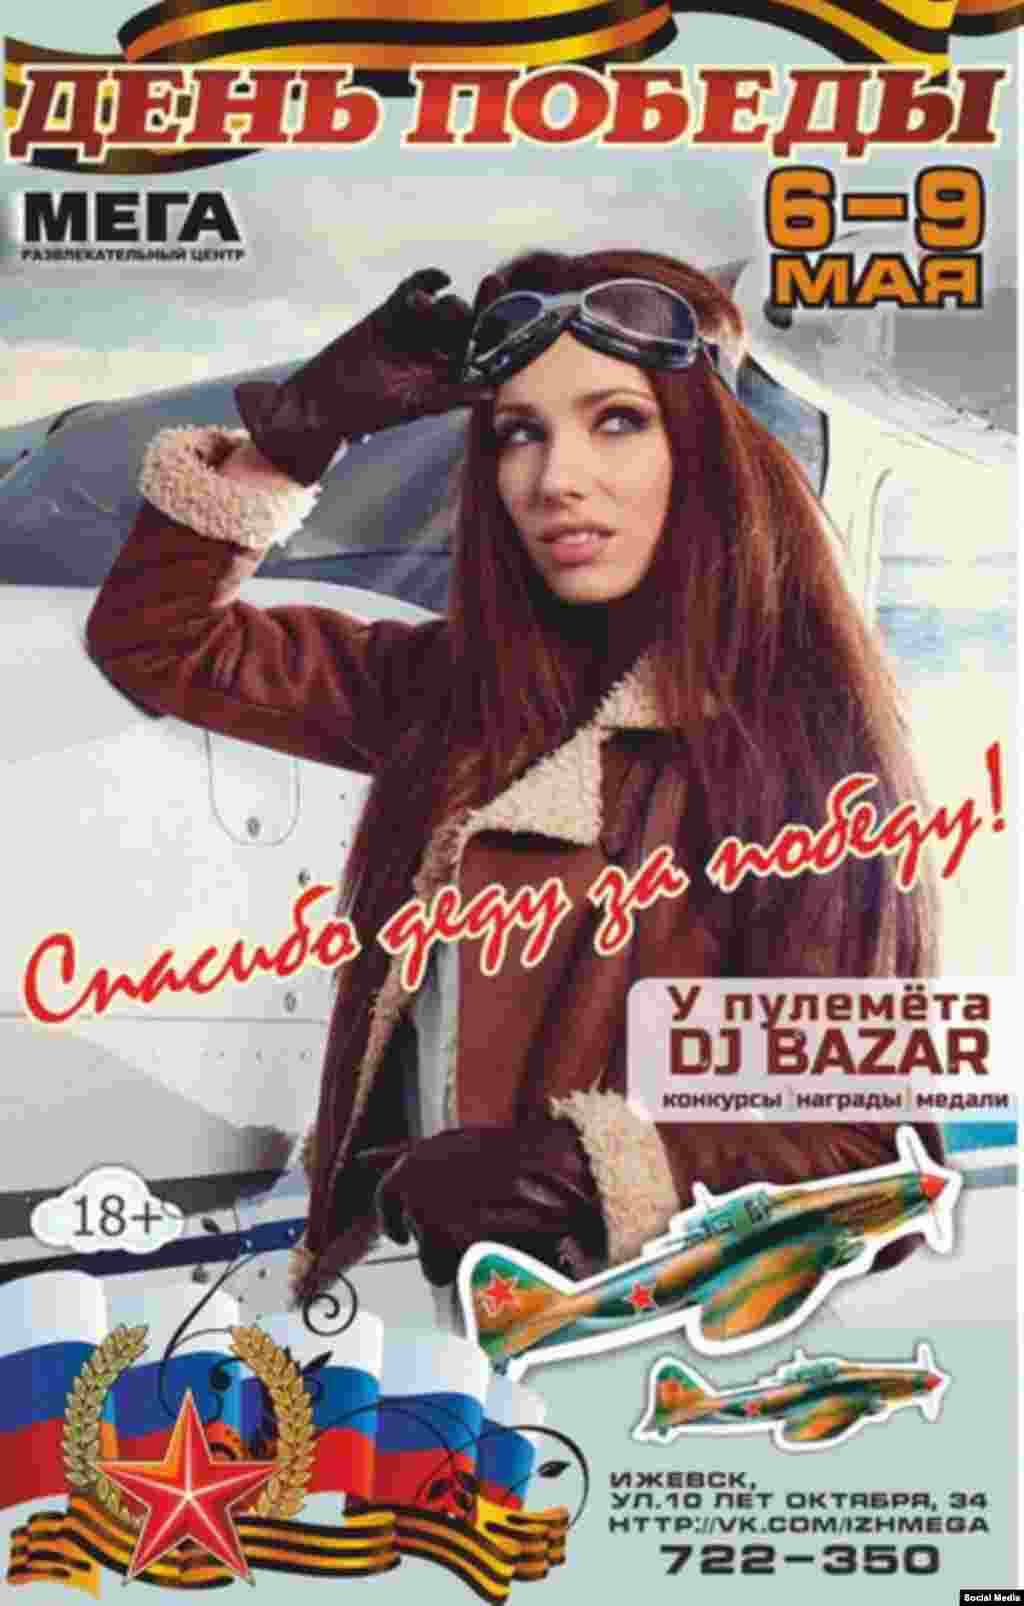 Ижевск, плакат ночного клуба